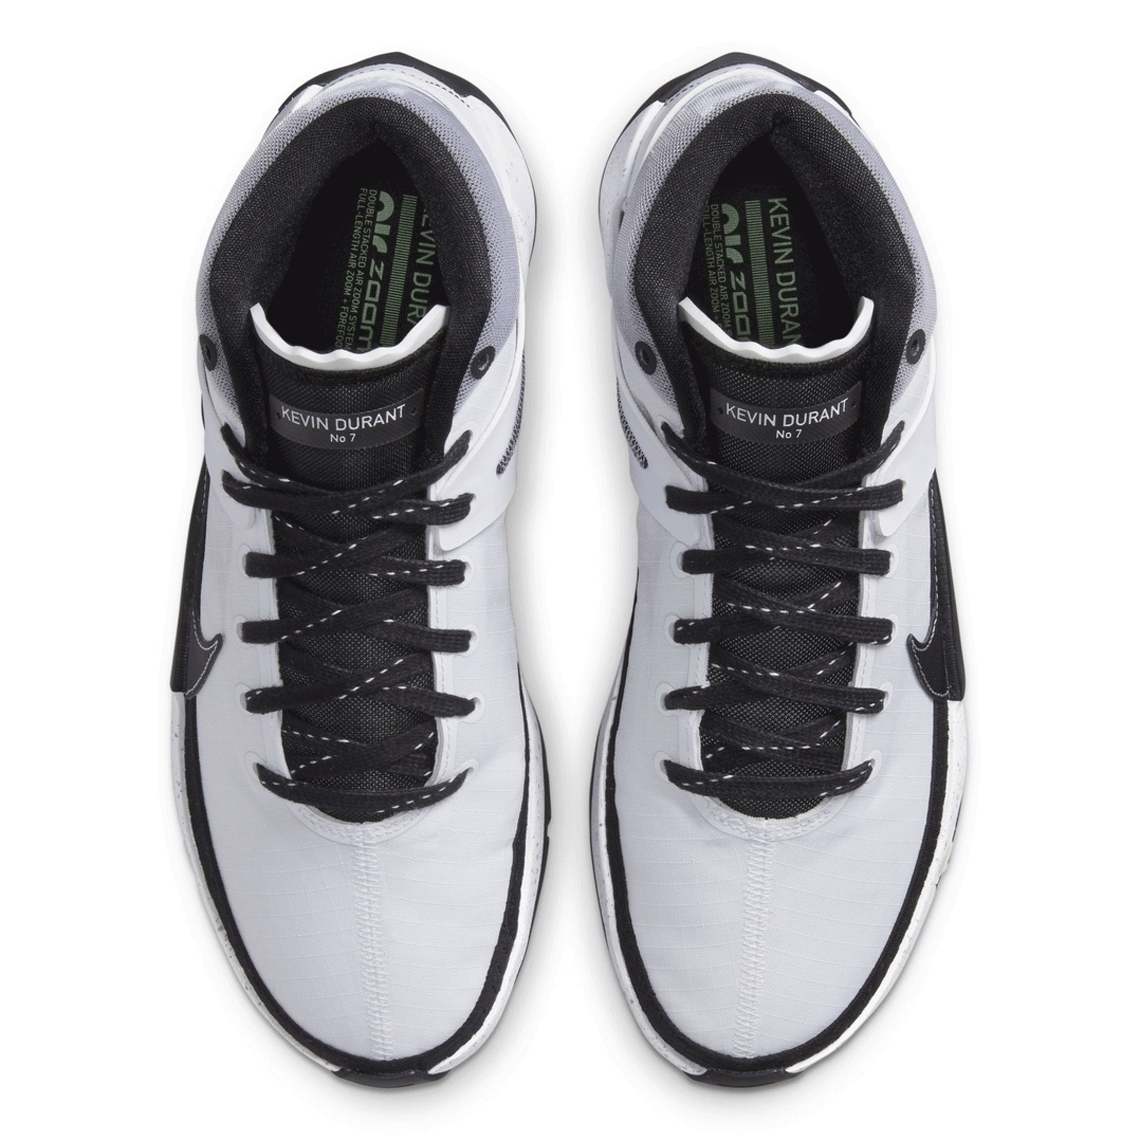 Nike Kd 13 White Black 2020 8